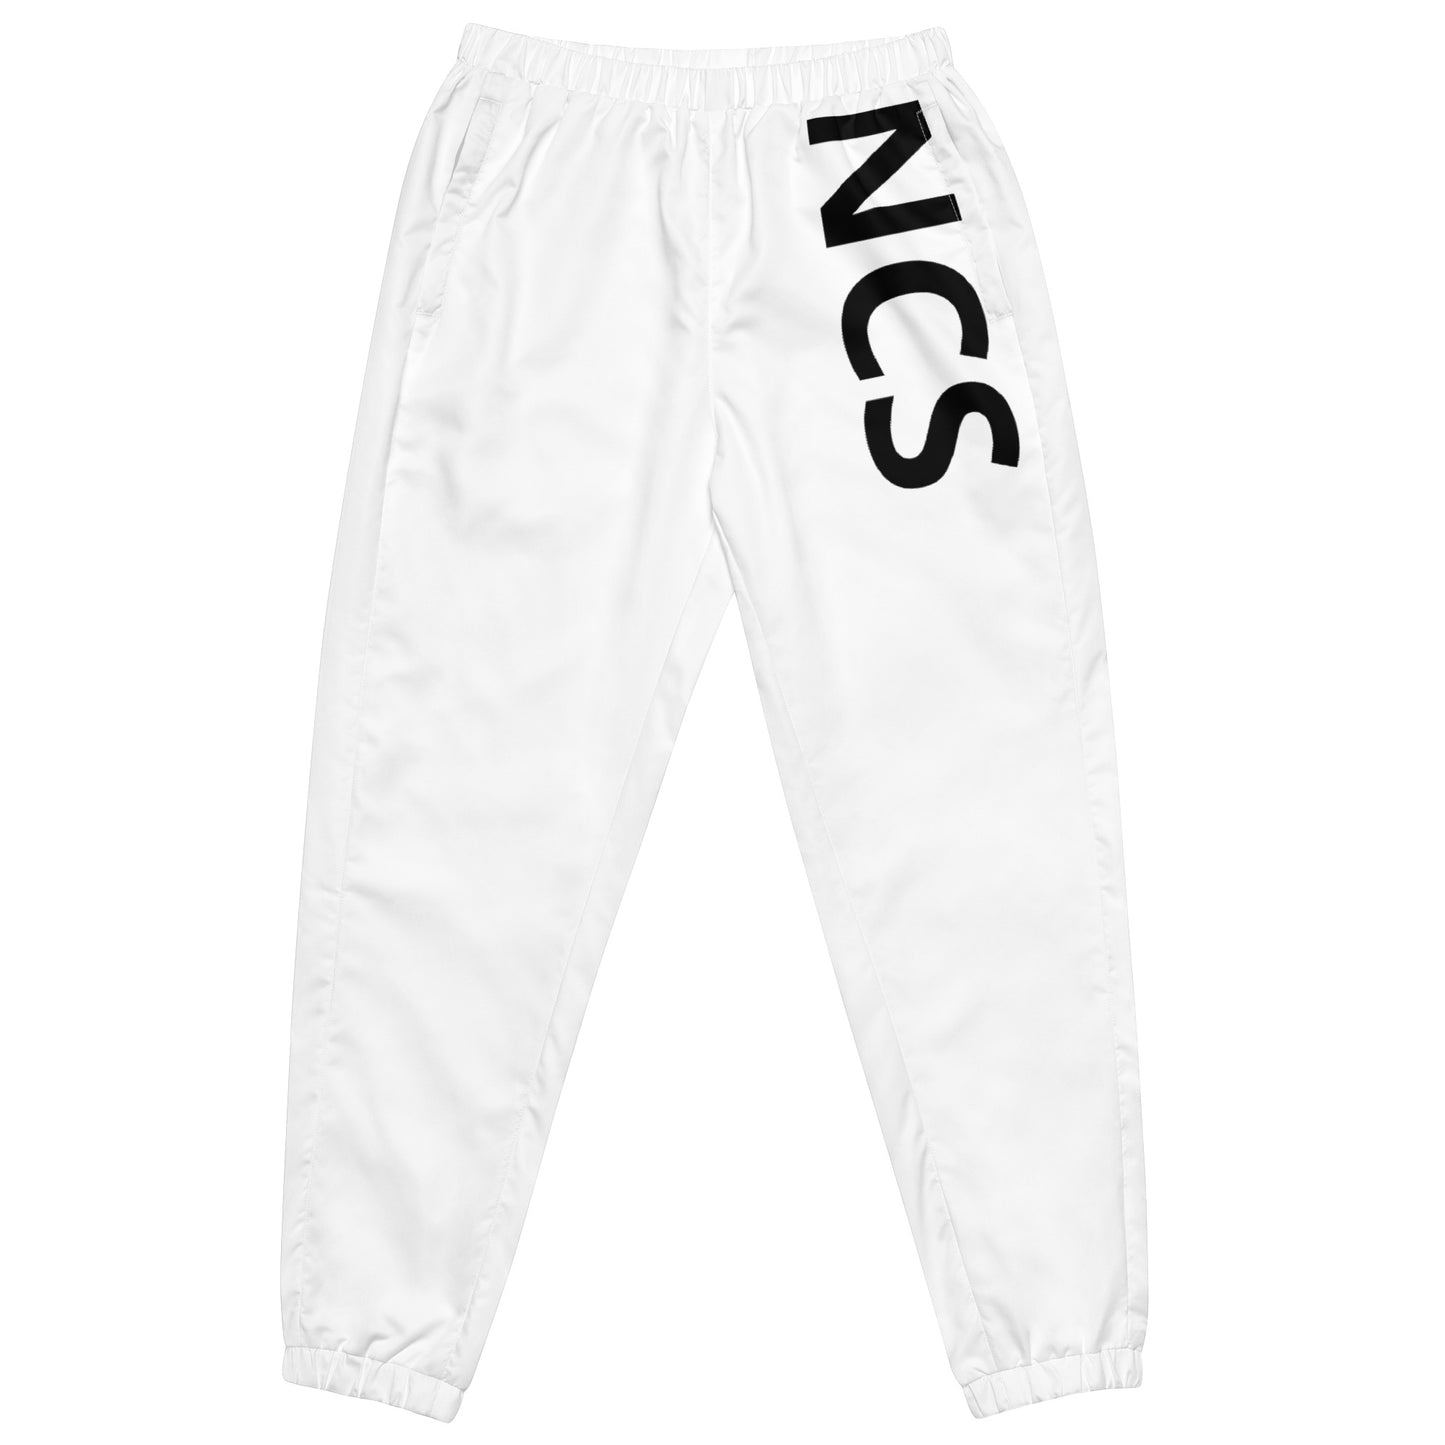 NCS track pants